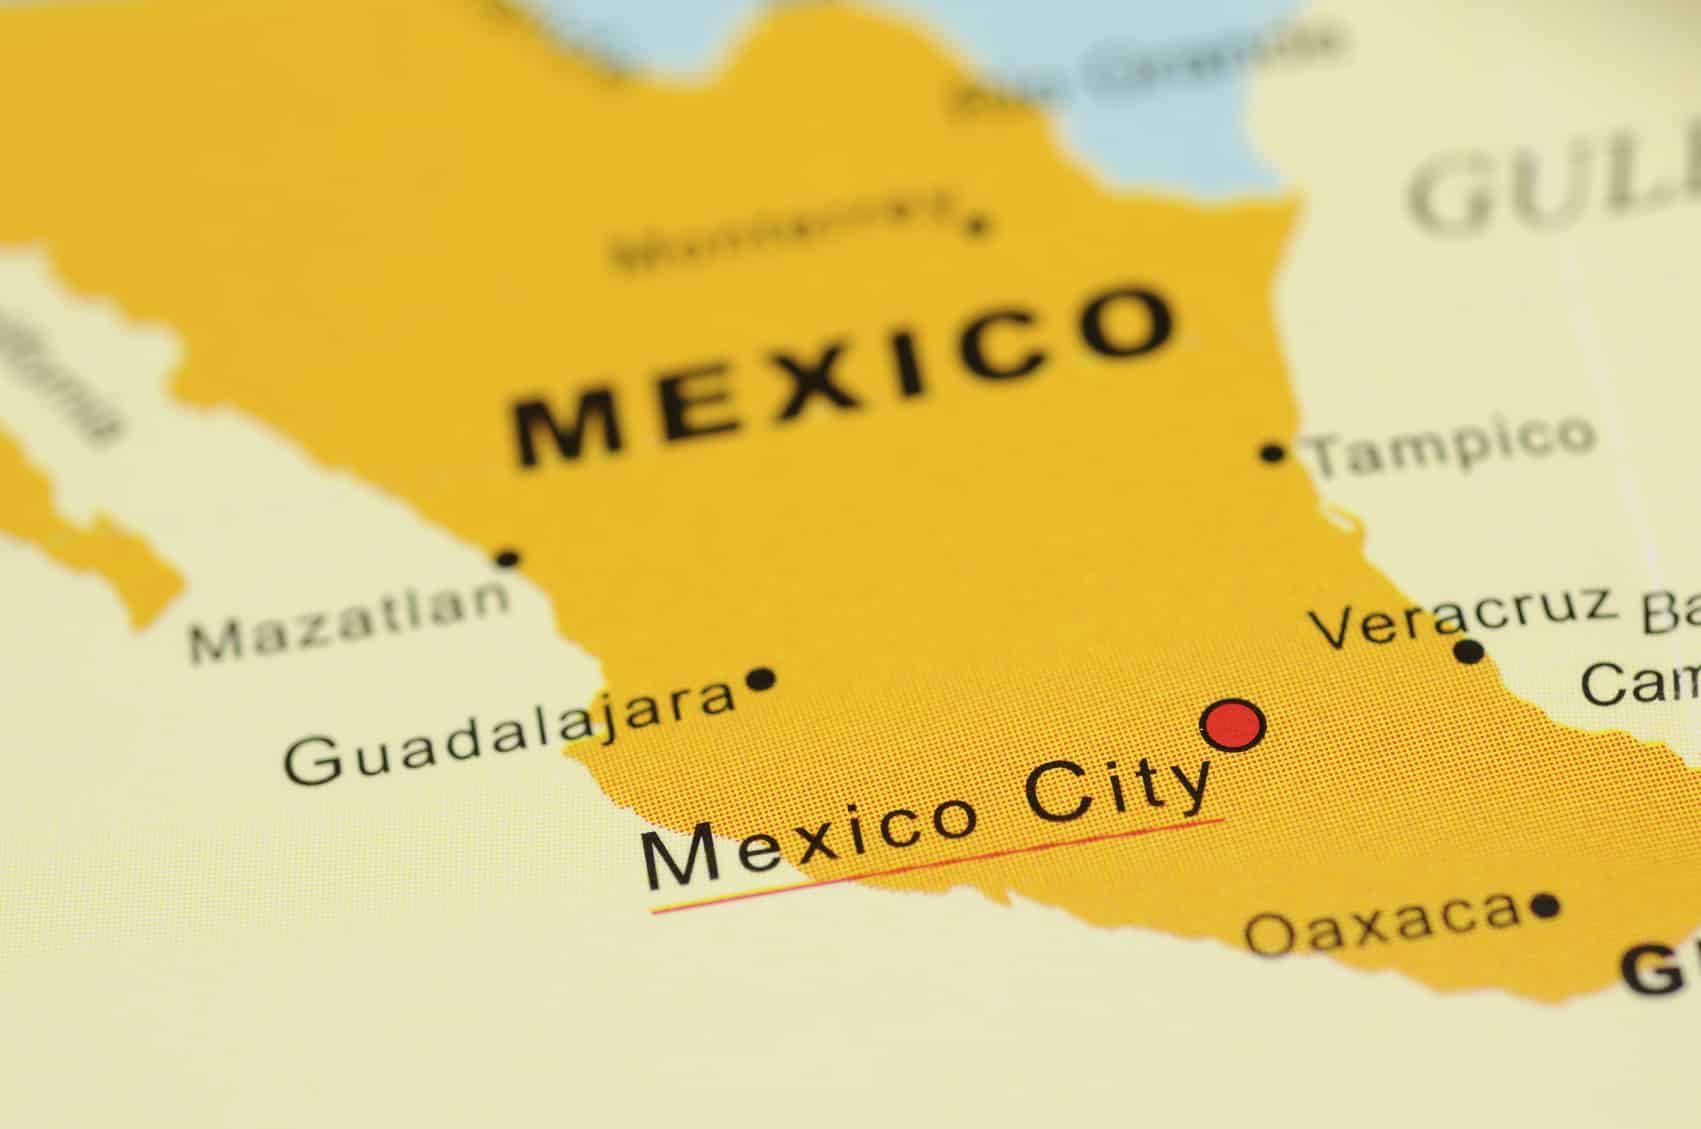 Estos son los mapas de México con nombres y capitales que puedes imprimir